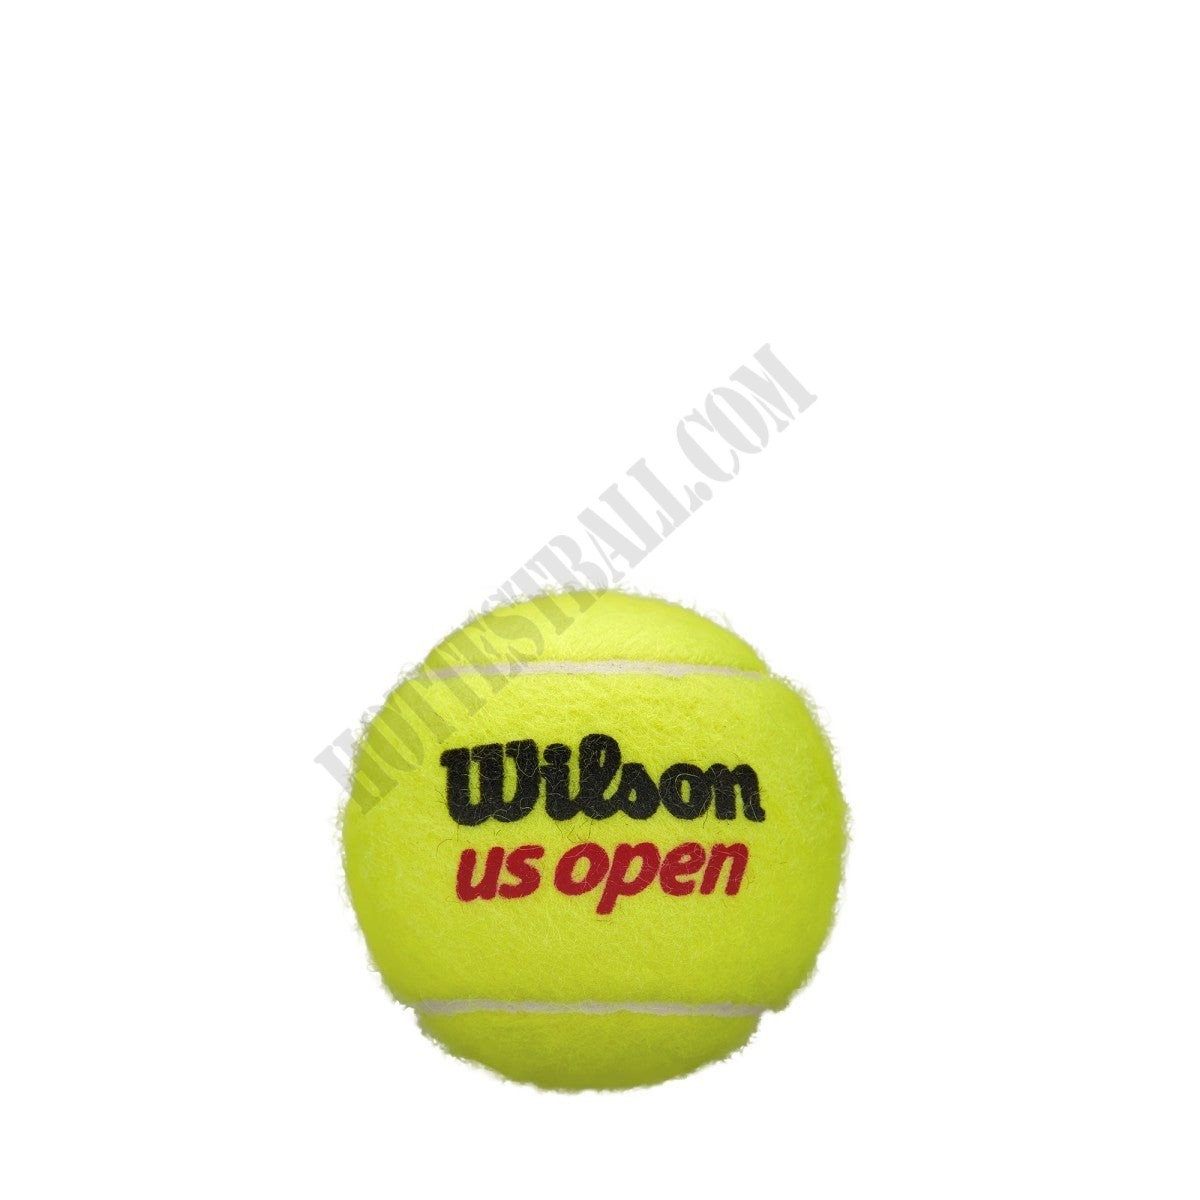 US Open Tennis Balls - Wilson Discount Store - -2